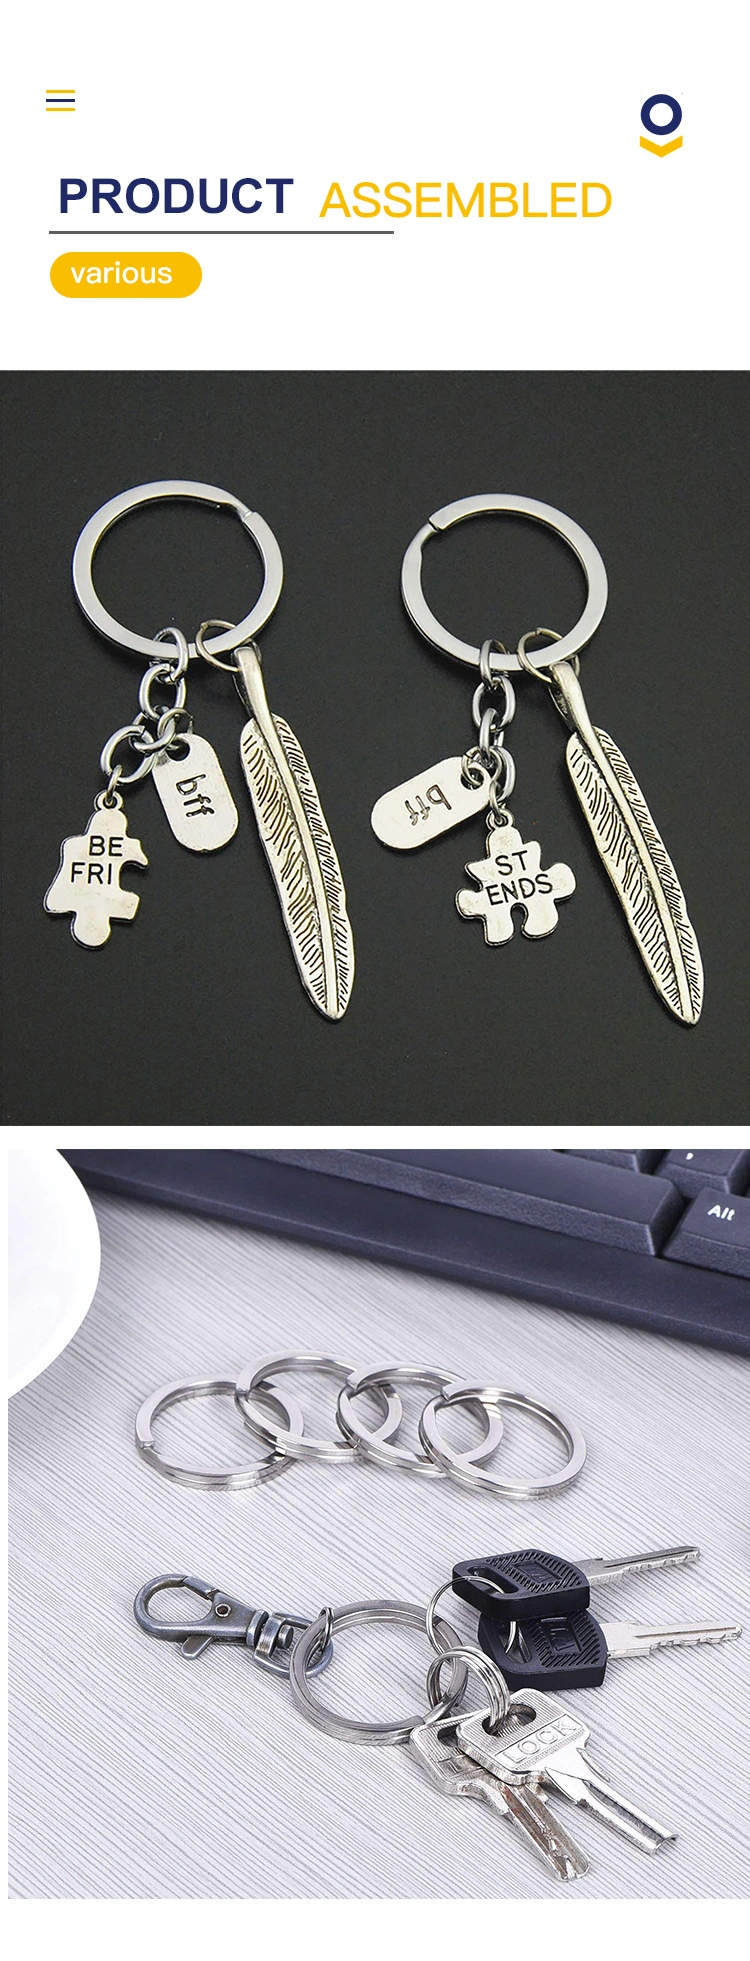 Key Ringssteel Round Flat Split Keychain Ring for Car Keys Organization DIY Attachment